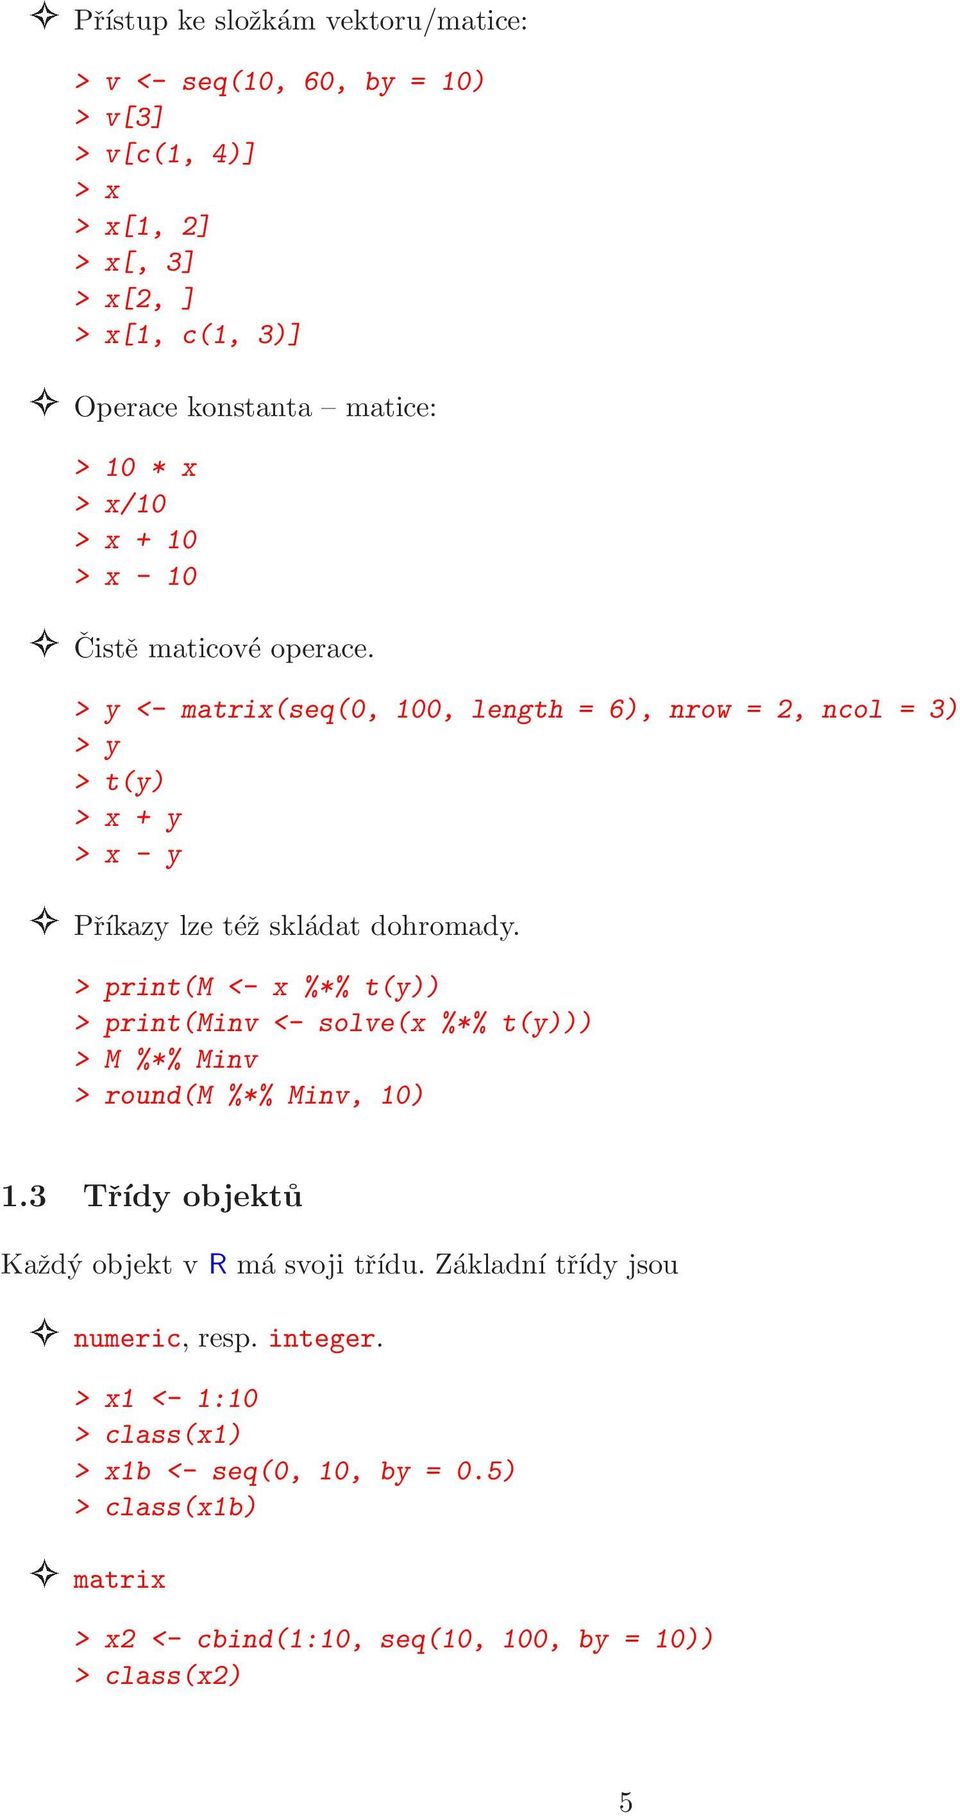 > y <- matrix(seq(0, 100, length = 6), nrow = 2, ncol = 3) > y > t(y) > x + y > x - y Příkazy lze též skládat dohromady.